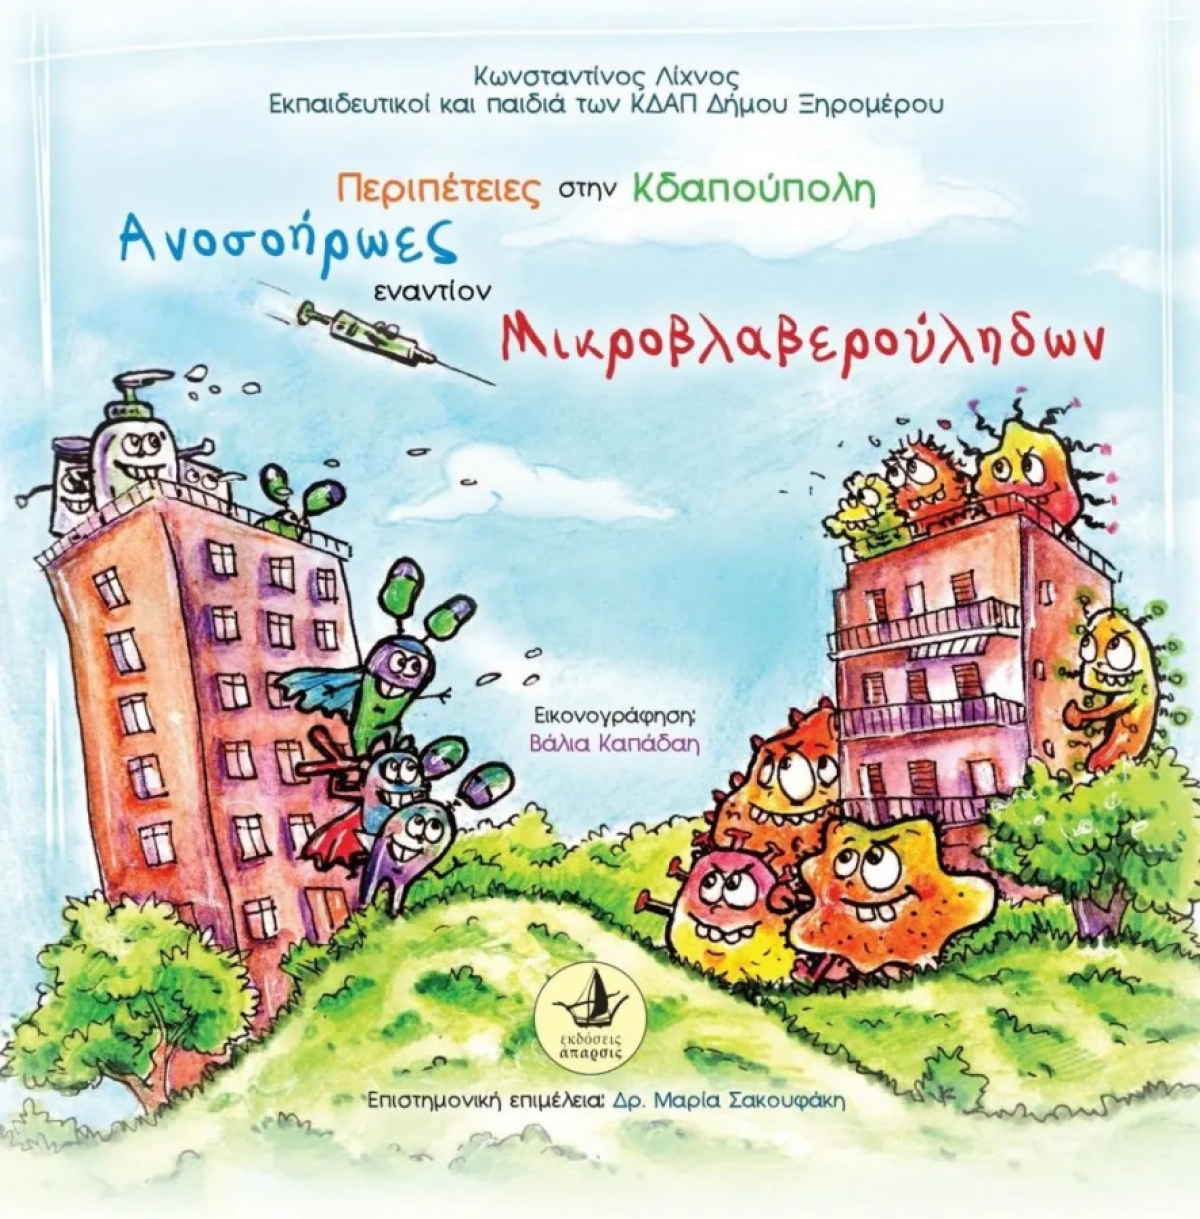 Θετικότατες κριτικές για το παιδικό παραμύθι «Περιπέτειες στην Κδαπούπολη» με τη στήριξη του Δήμου Ξηρομέρου